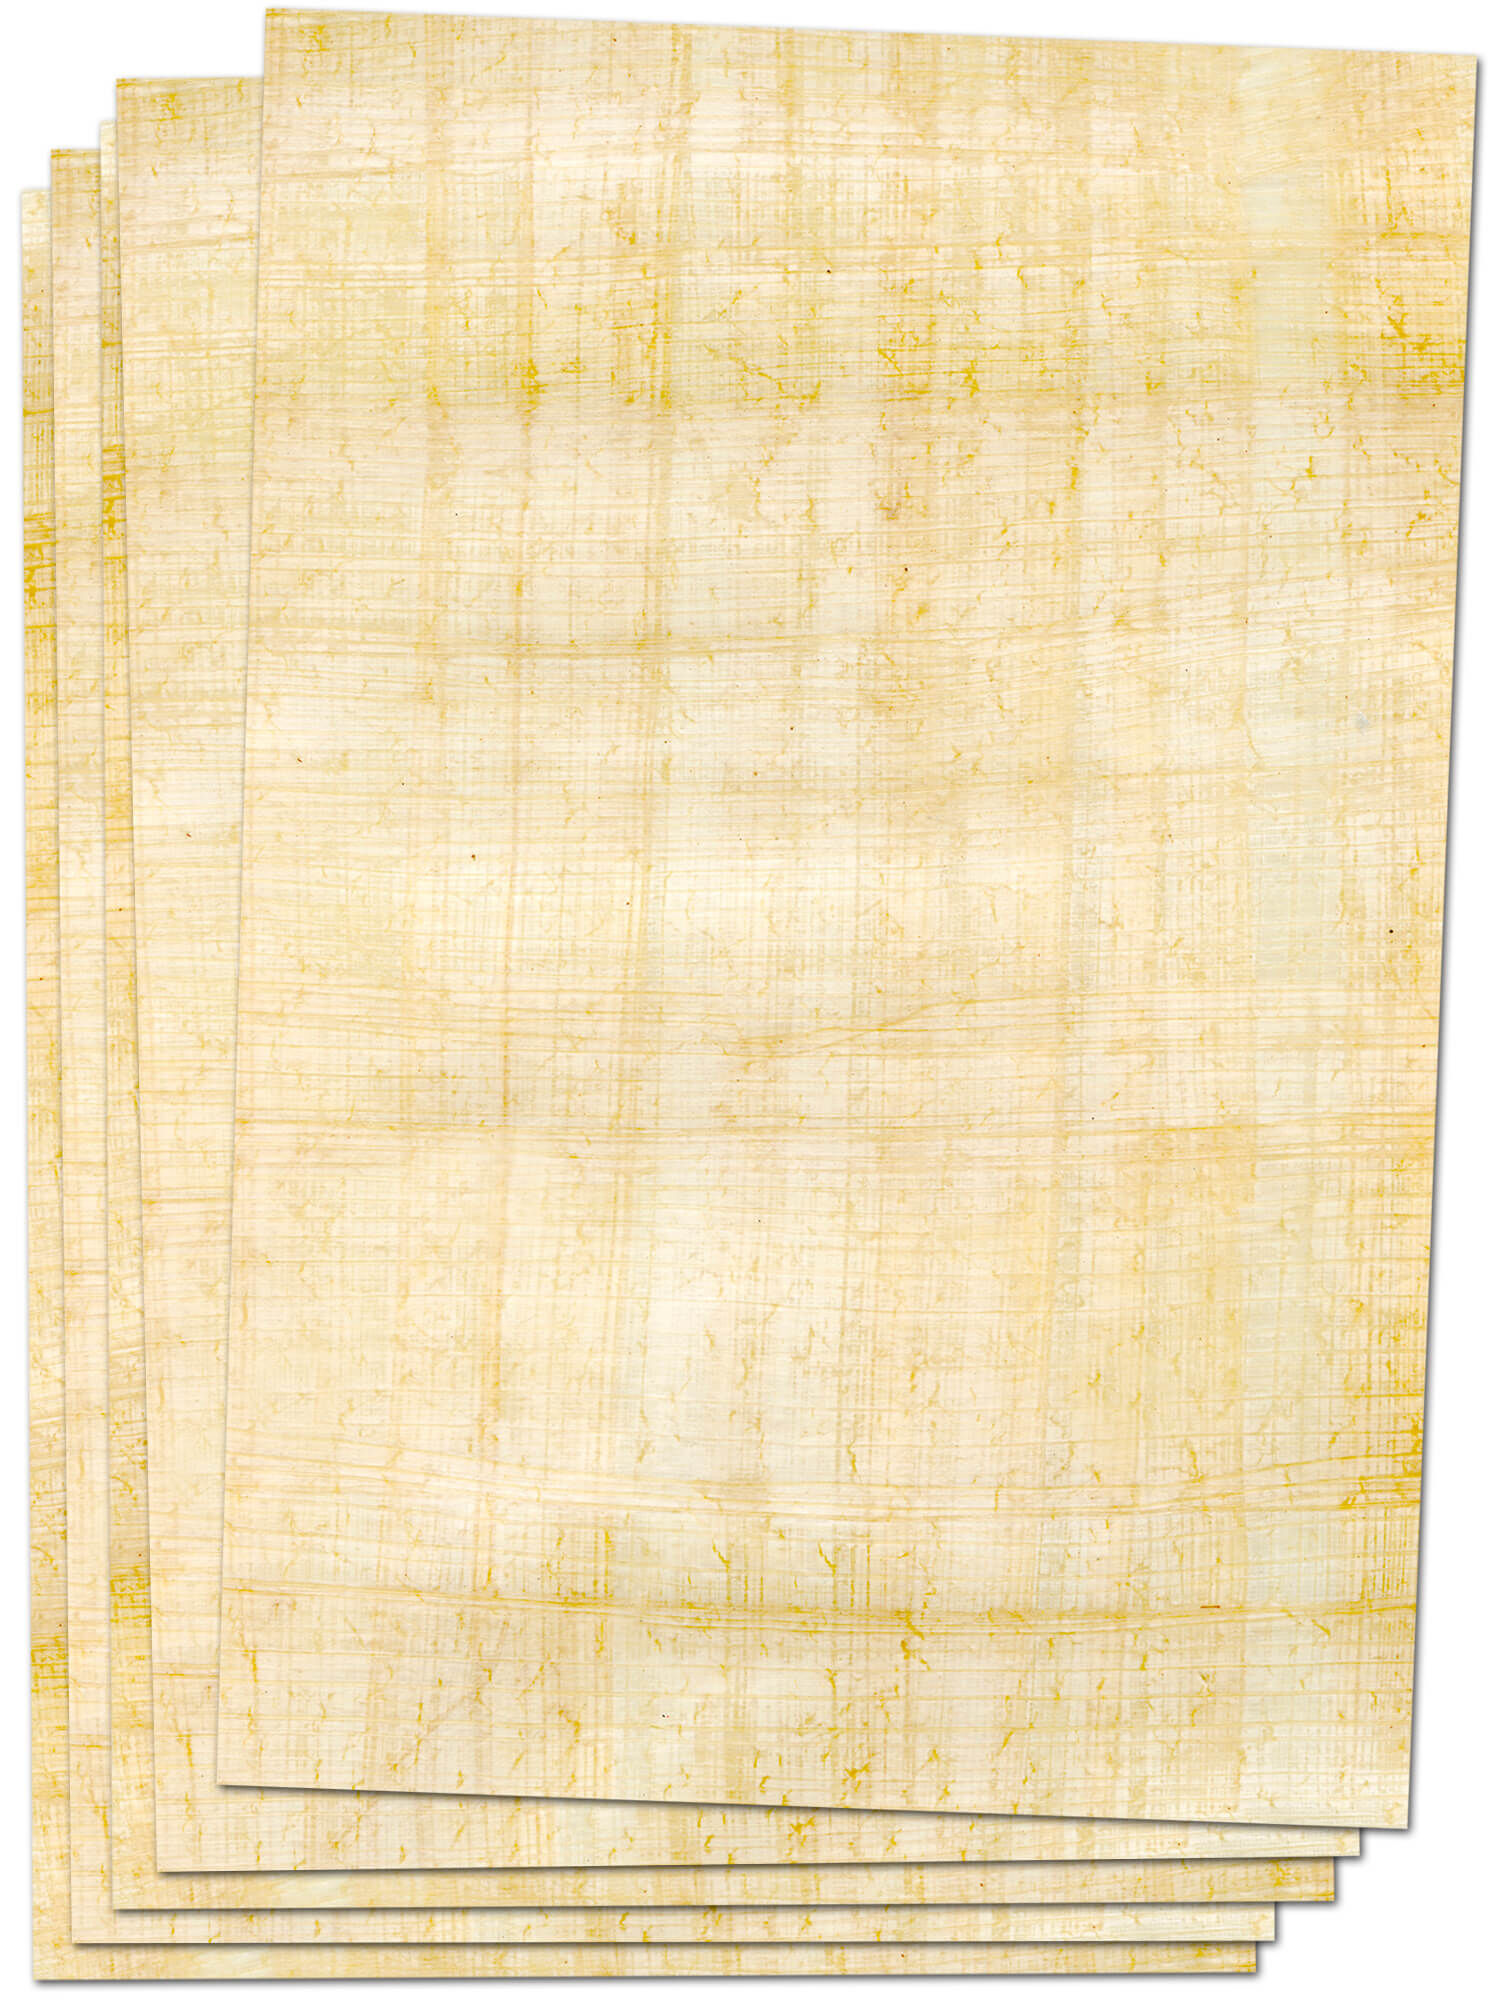 Import Allemagne Papyrus 88027687 PlanoDynamic Paquet de 500 feuilles de papier multifonctions format US 21,5 x 27,9 cm grammage 80 g/m² Blanc 